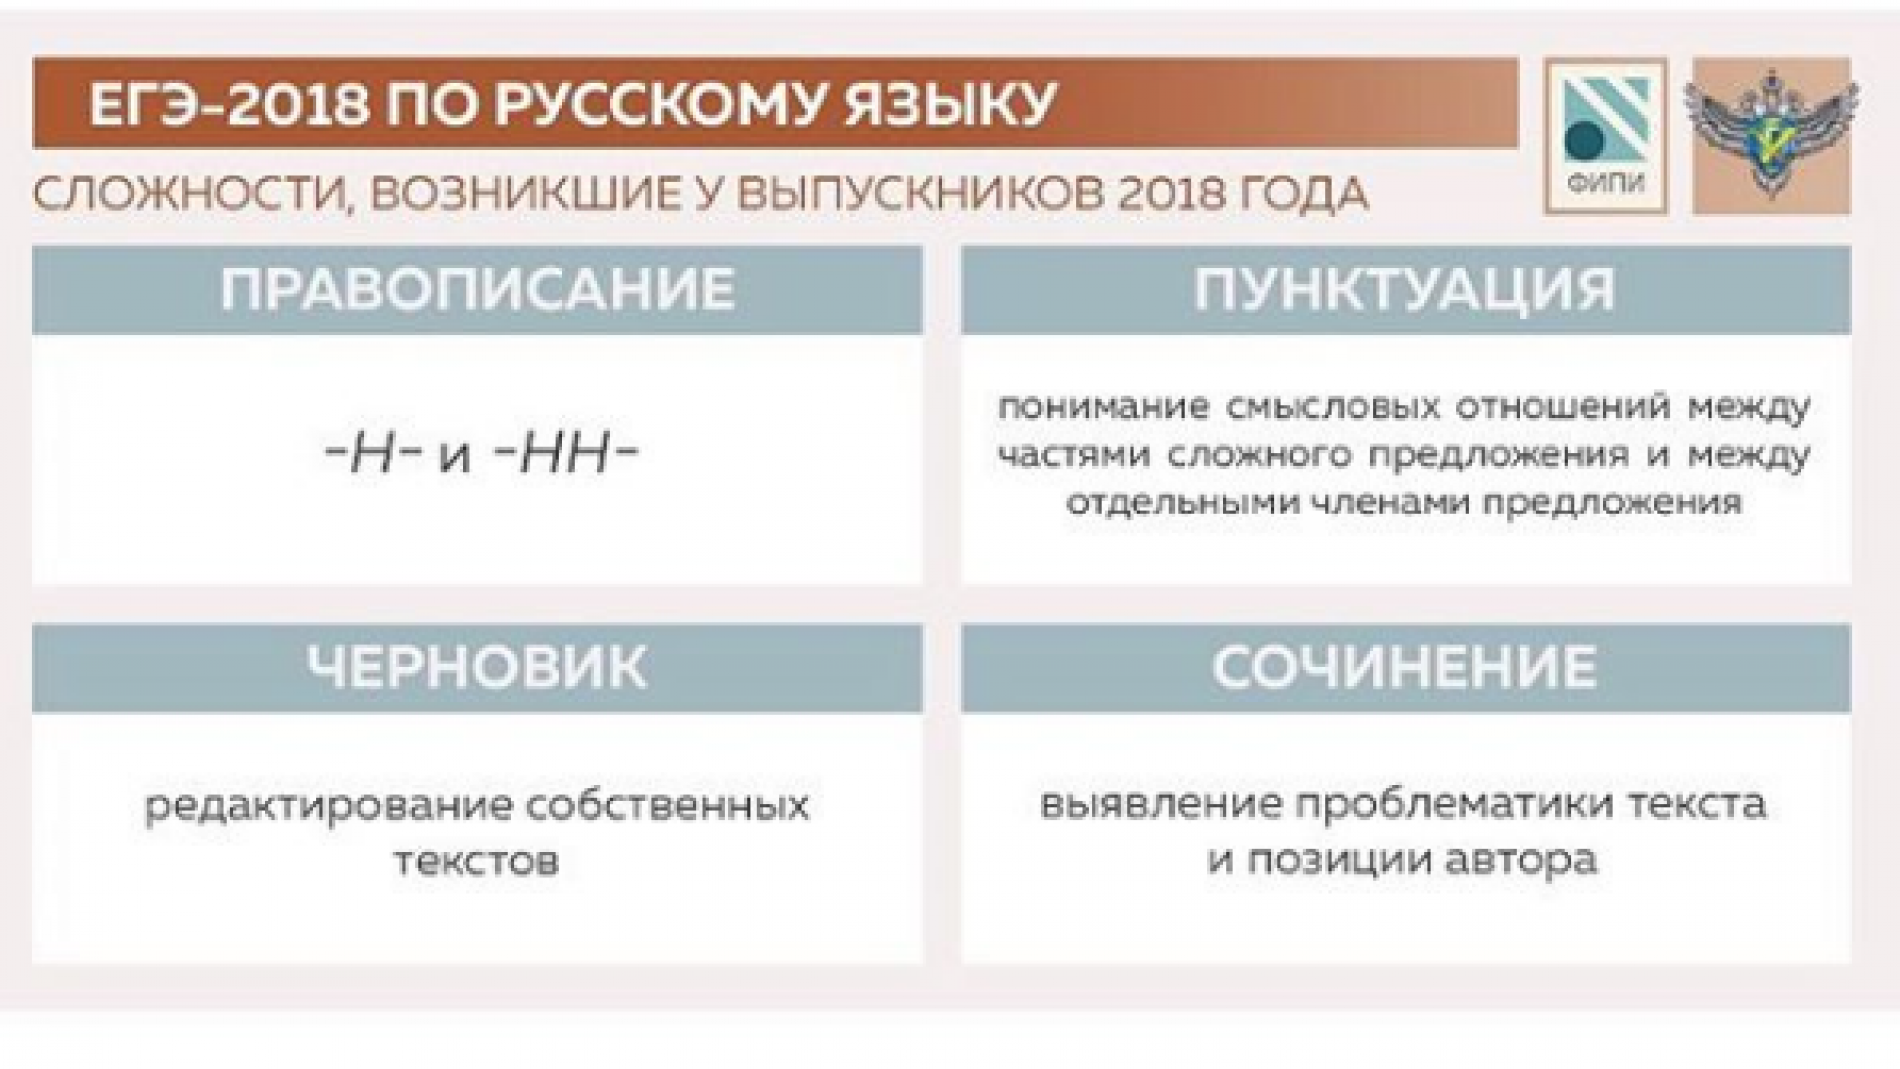 Федеральный институт педагогических измерений провёл анализ кампании ЕГЭ-2018 по русскому языку и опубликовал методические рекомендации для учителей и учеников.